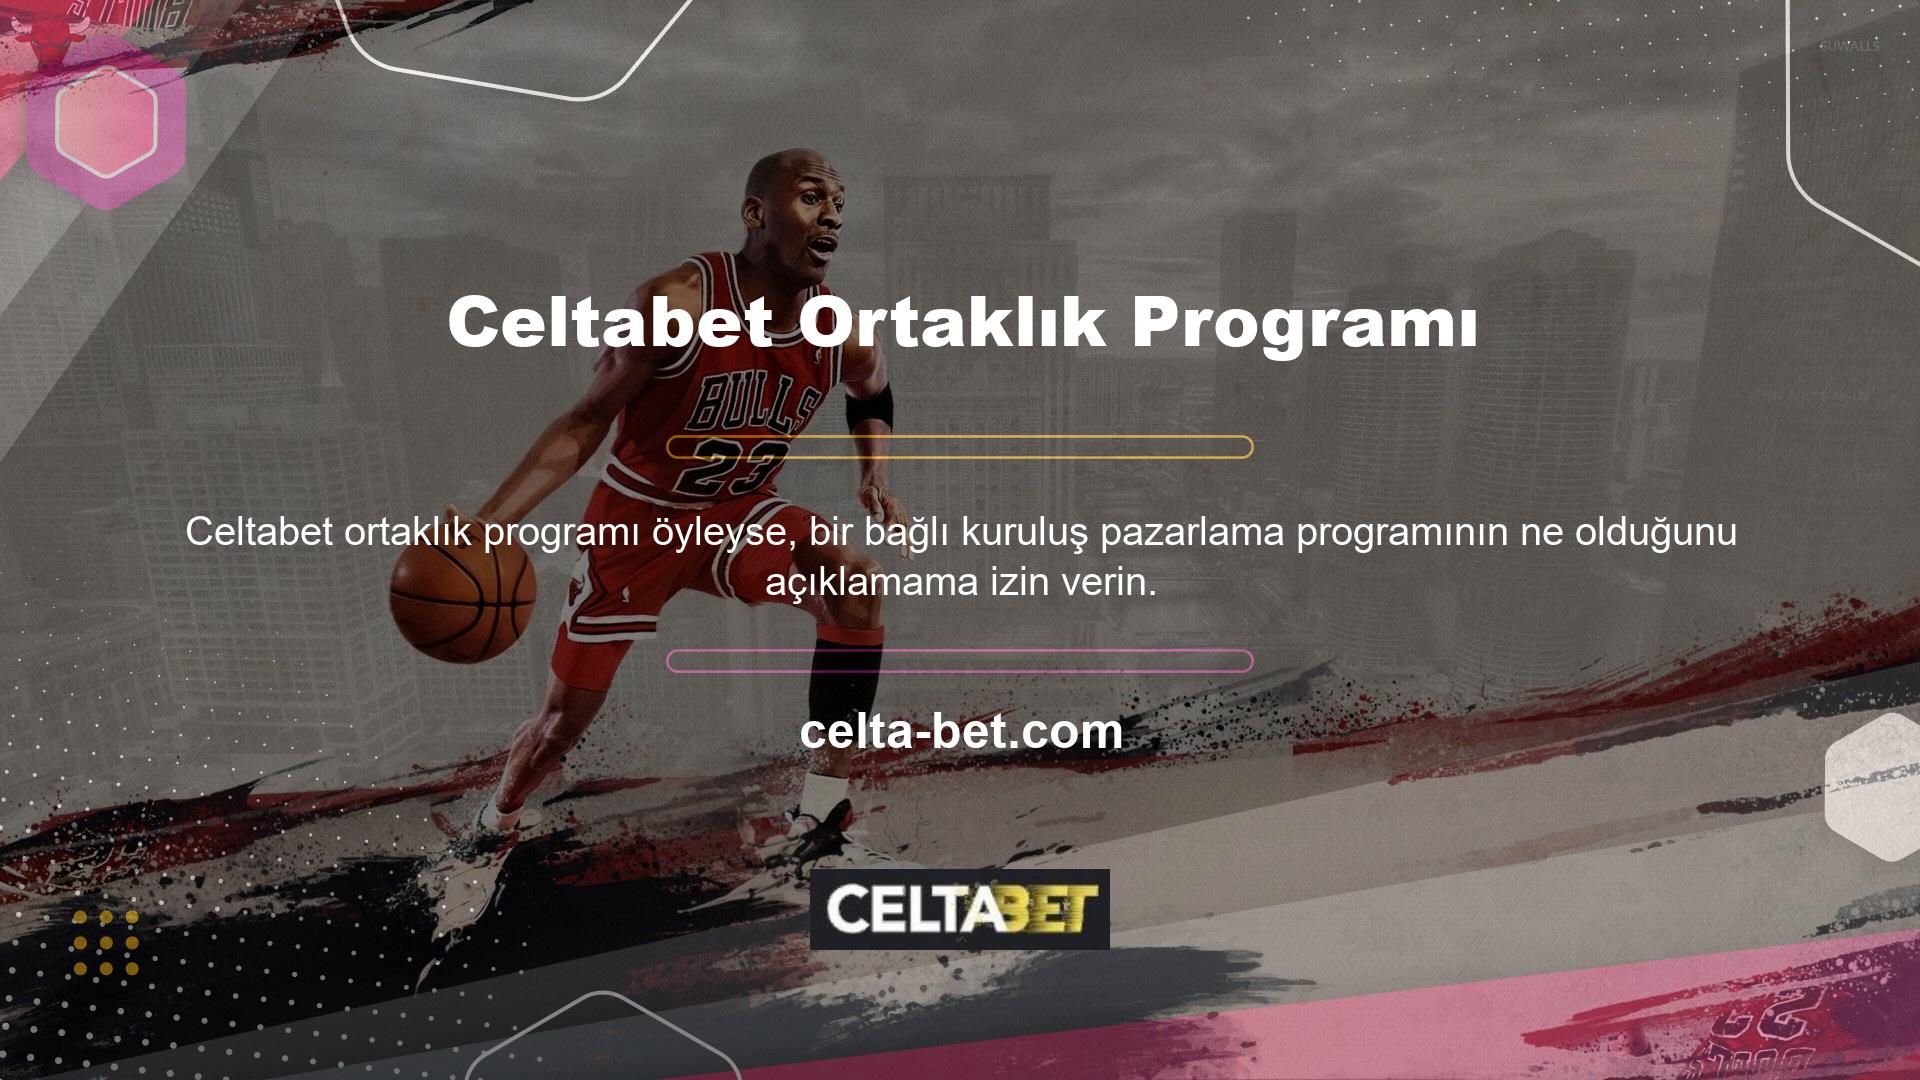 Ortaklık Programı, Celtabet Casino tarafından işletilen bir hizmettir